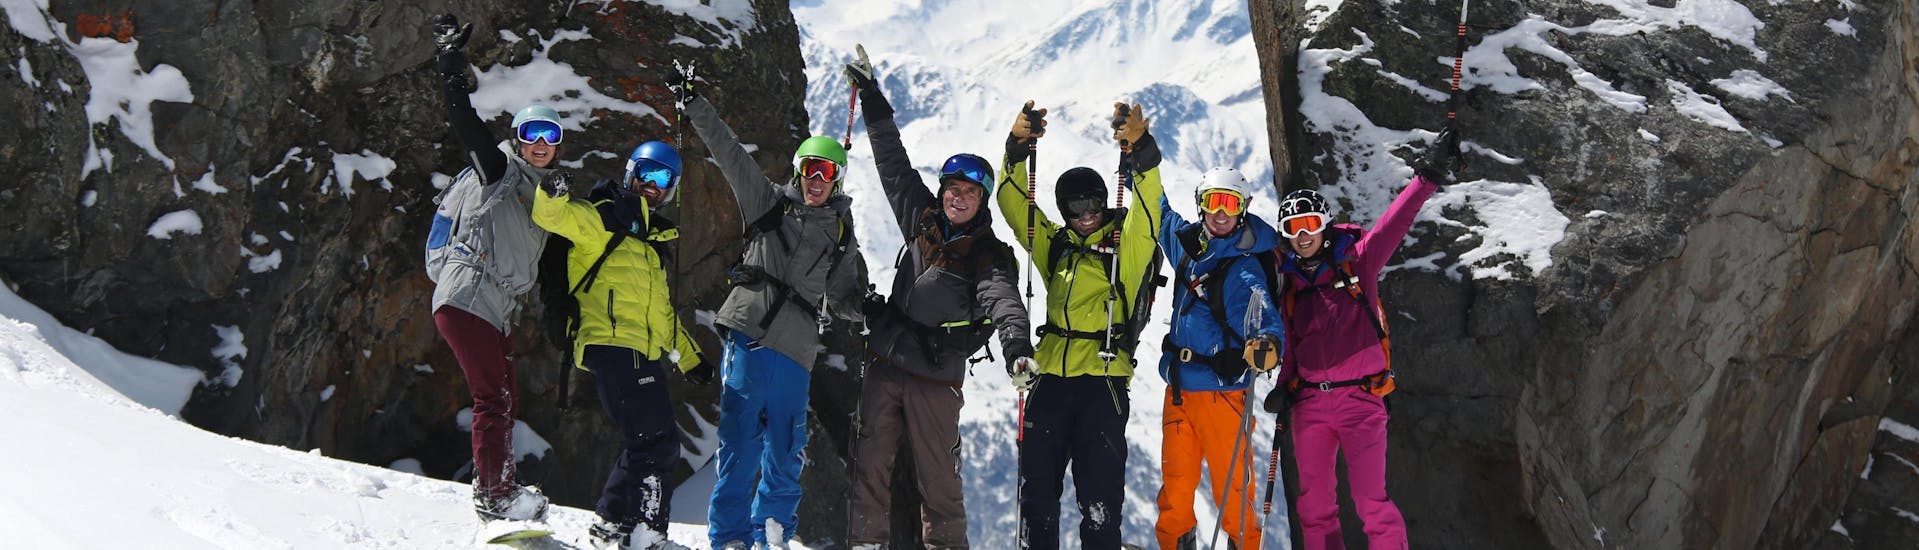 Un groupe d'amis prend des photos durant leur Cours de ski Adultes + Forfait pour Débutants avec l'école de ski Prosneige Val d'Isère.